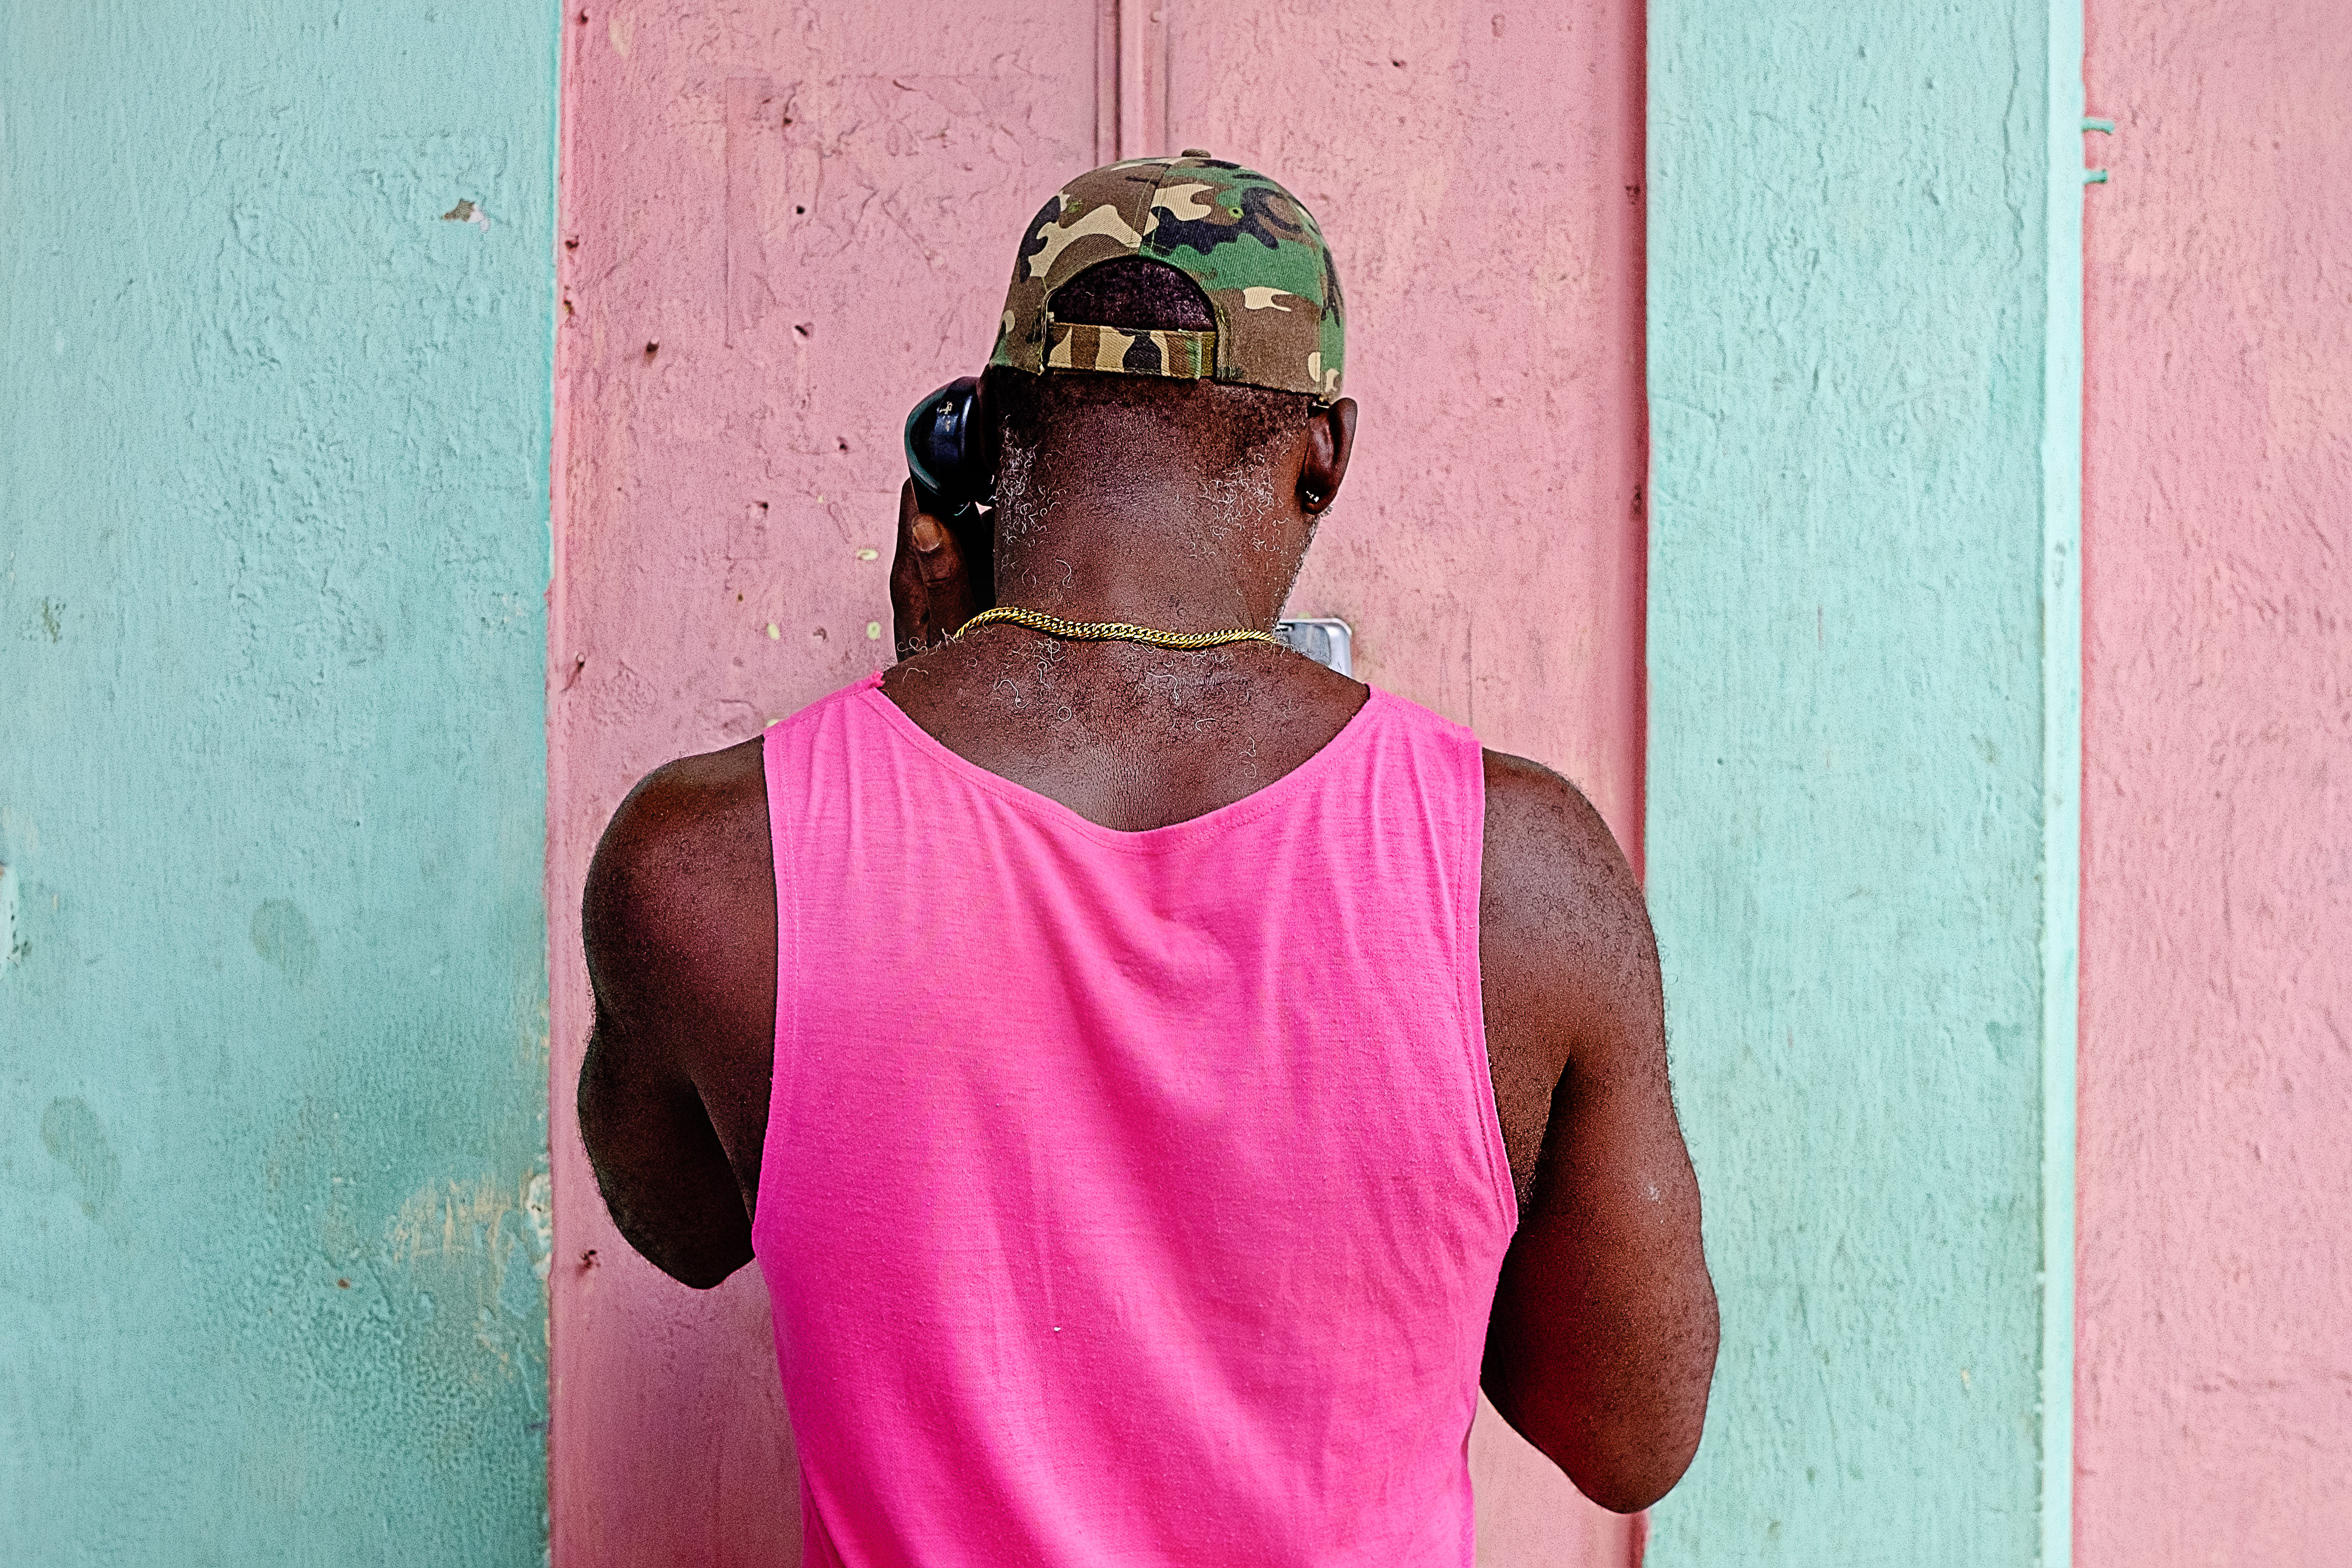 Kirth_Bobb_Photographs_Havanna_Cuba-0300-Edit-2.JPG